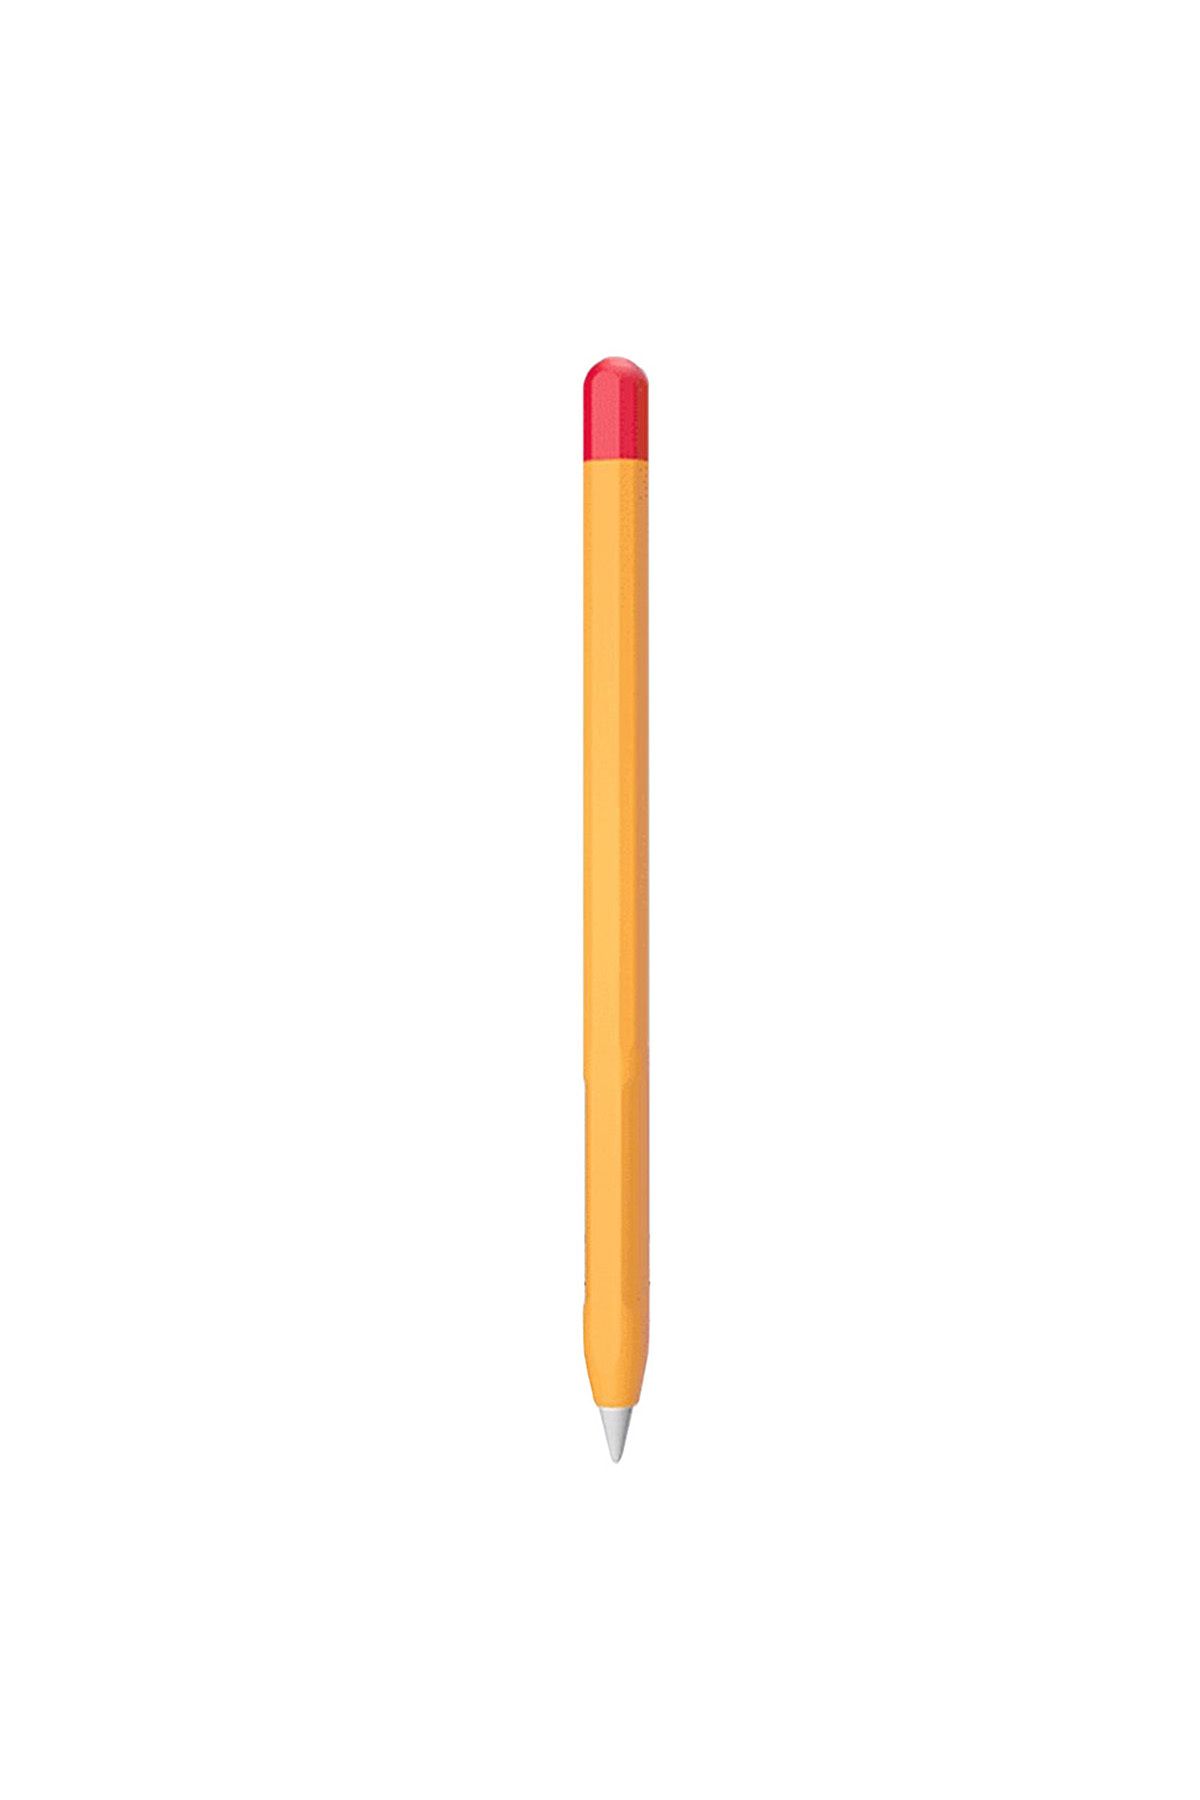 Tagomoon Apple Pencil (2. nesil) Uyumlu Kılıf Çift Renkli Kaydırmaz Silikon Koruyucu